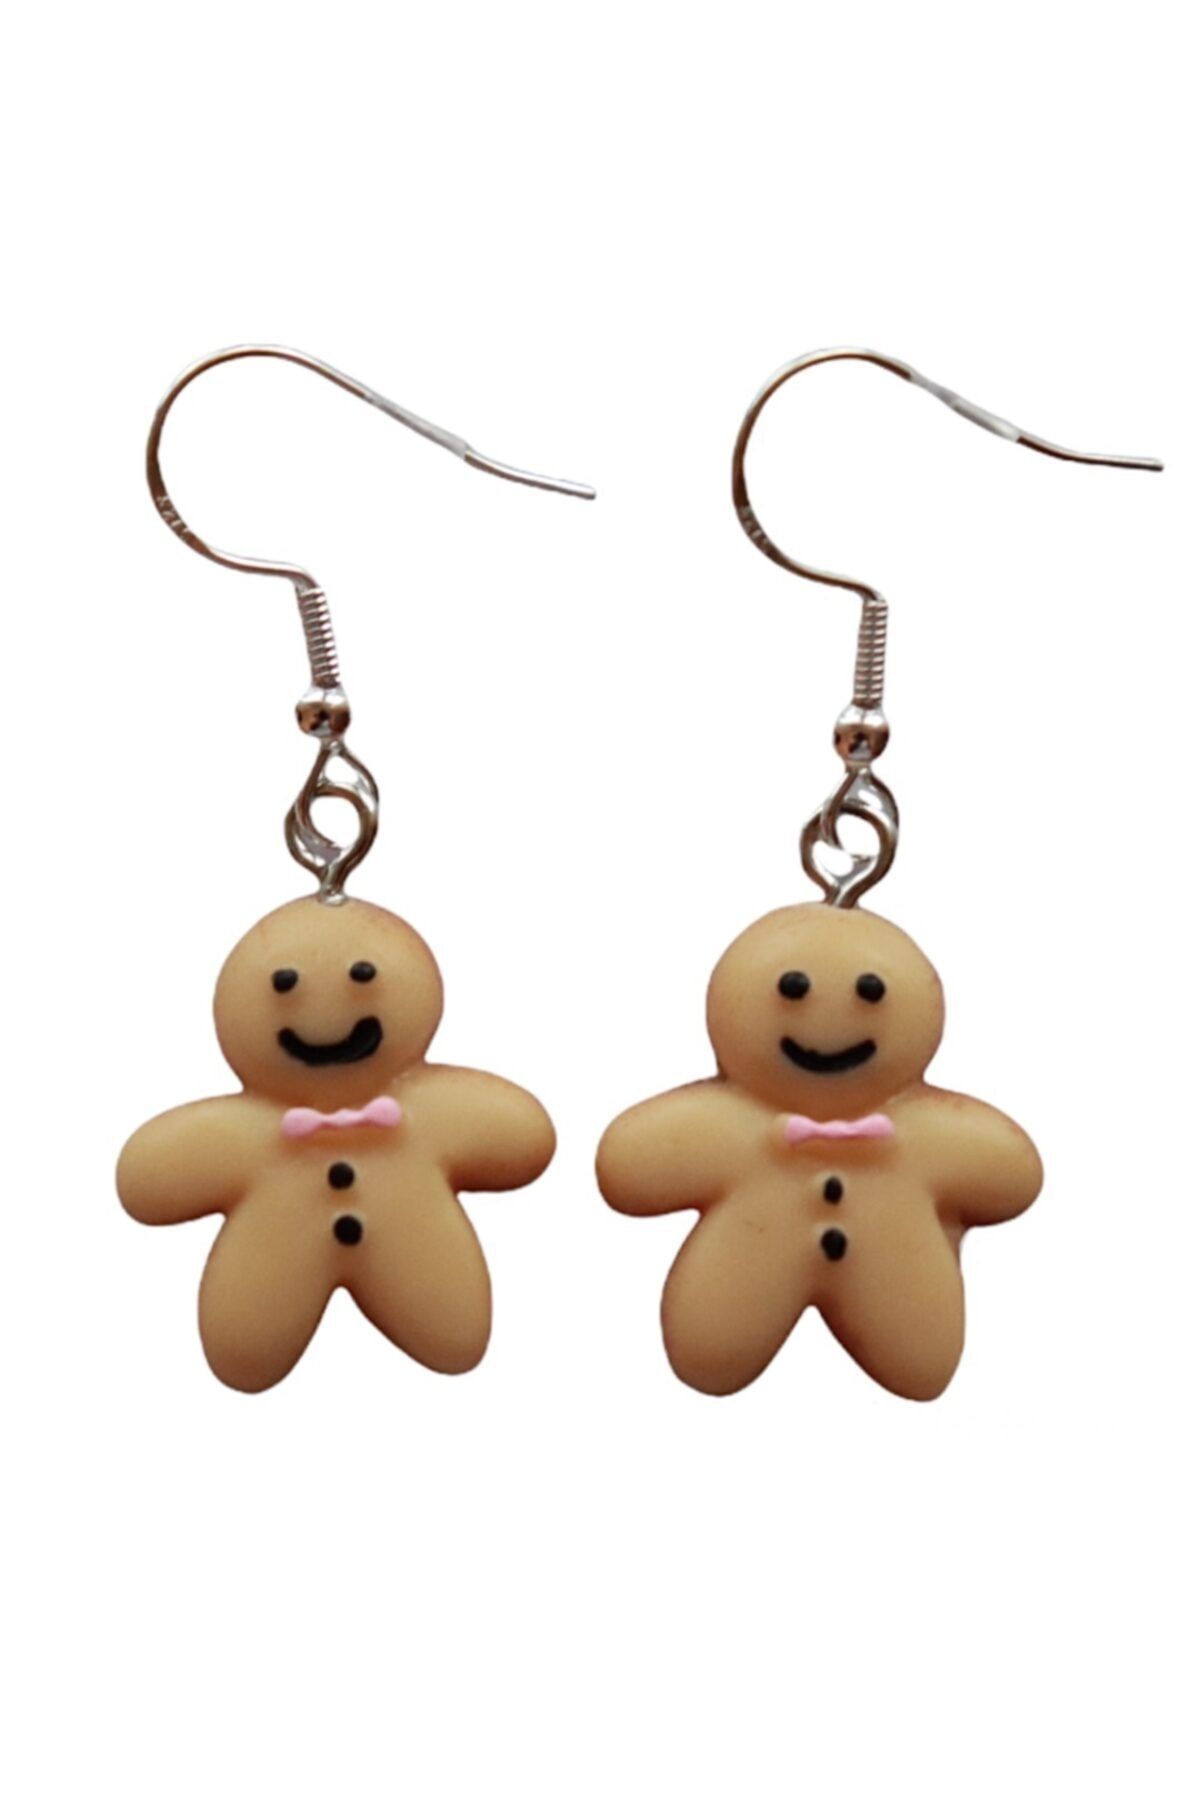 Lezzetli Takılar Dices Yılbaşı Mini Gingerbread Zencefil Adam Kurabiye Küpe Yılbaşı Hediye Koleksiyonu